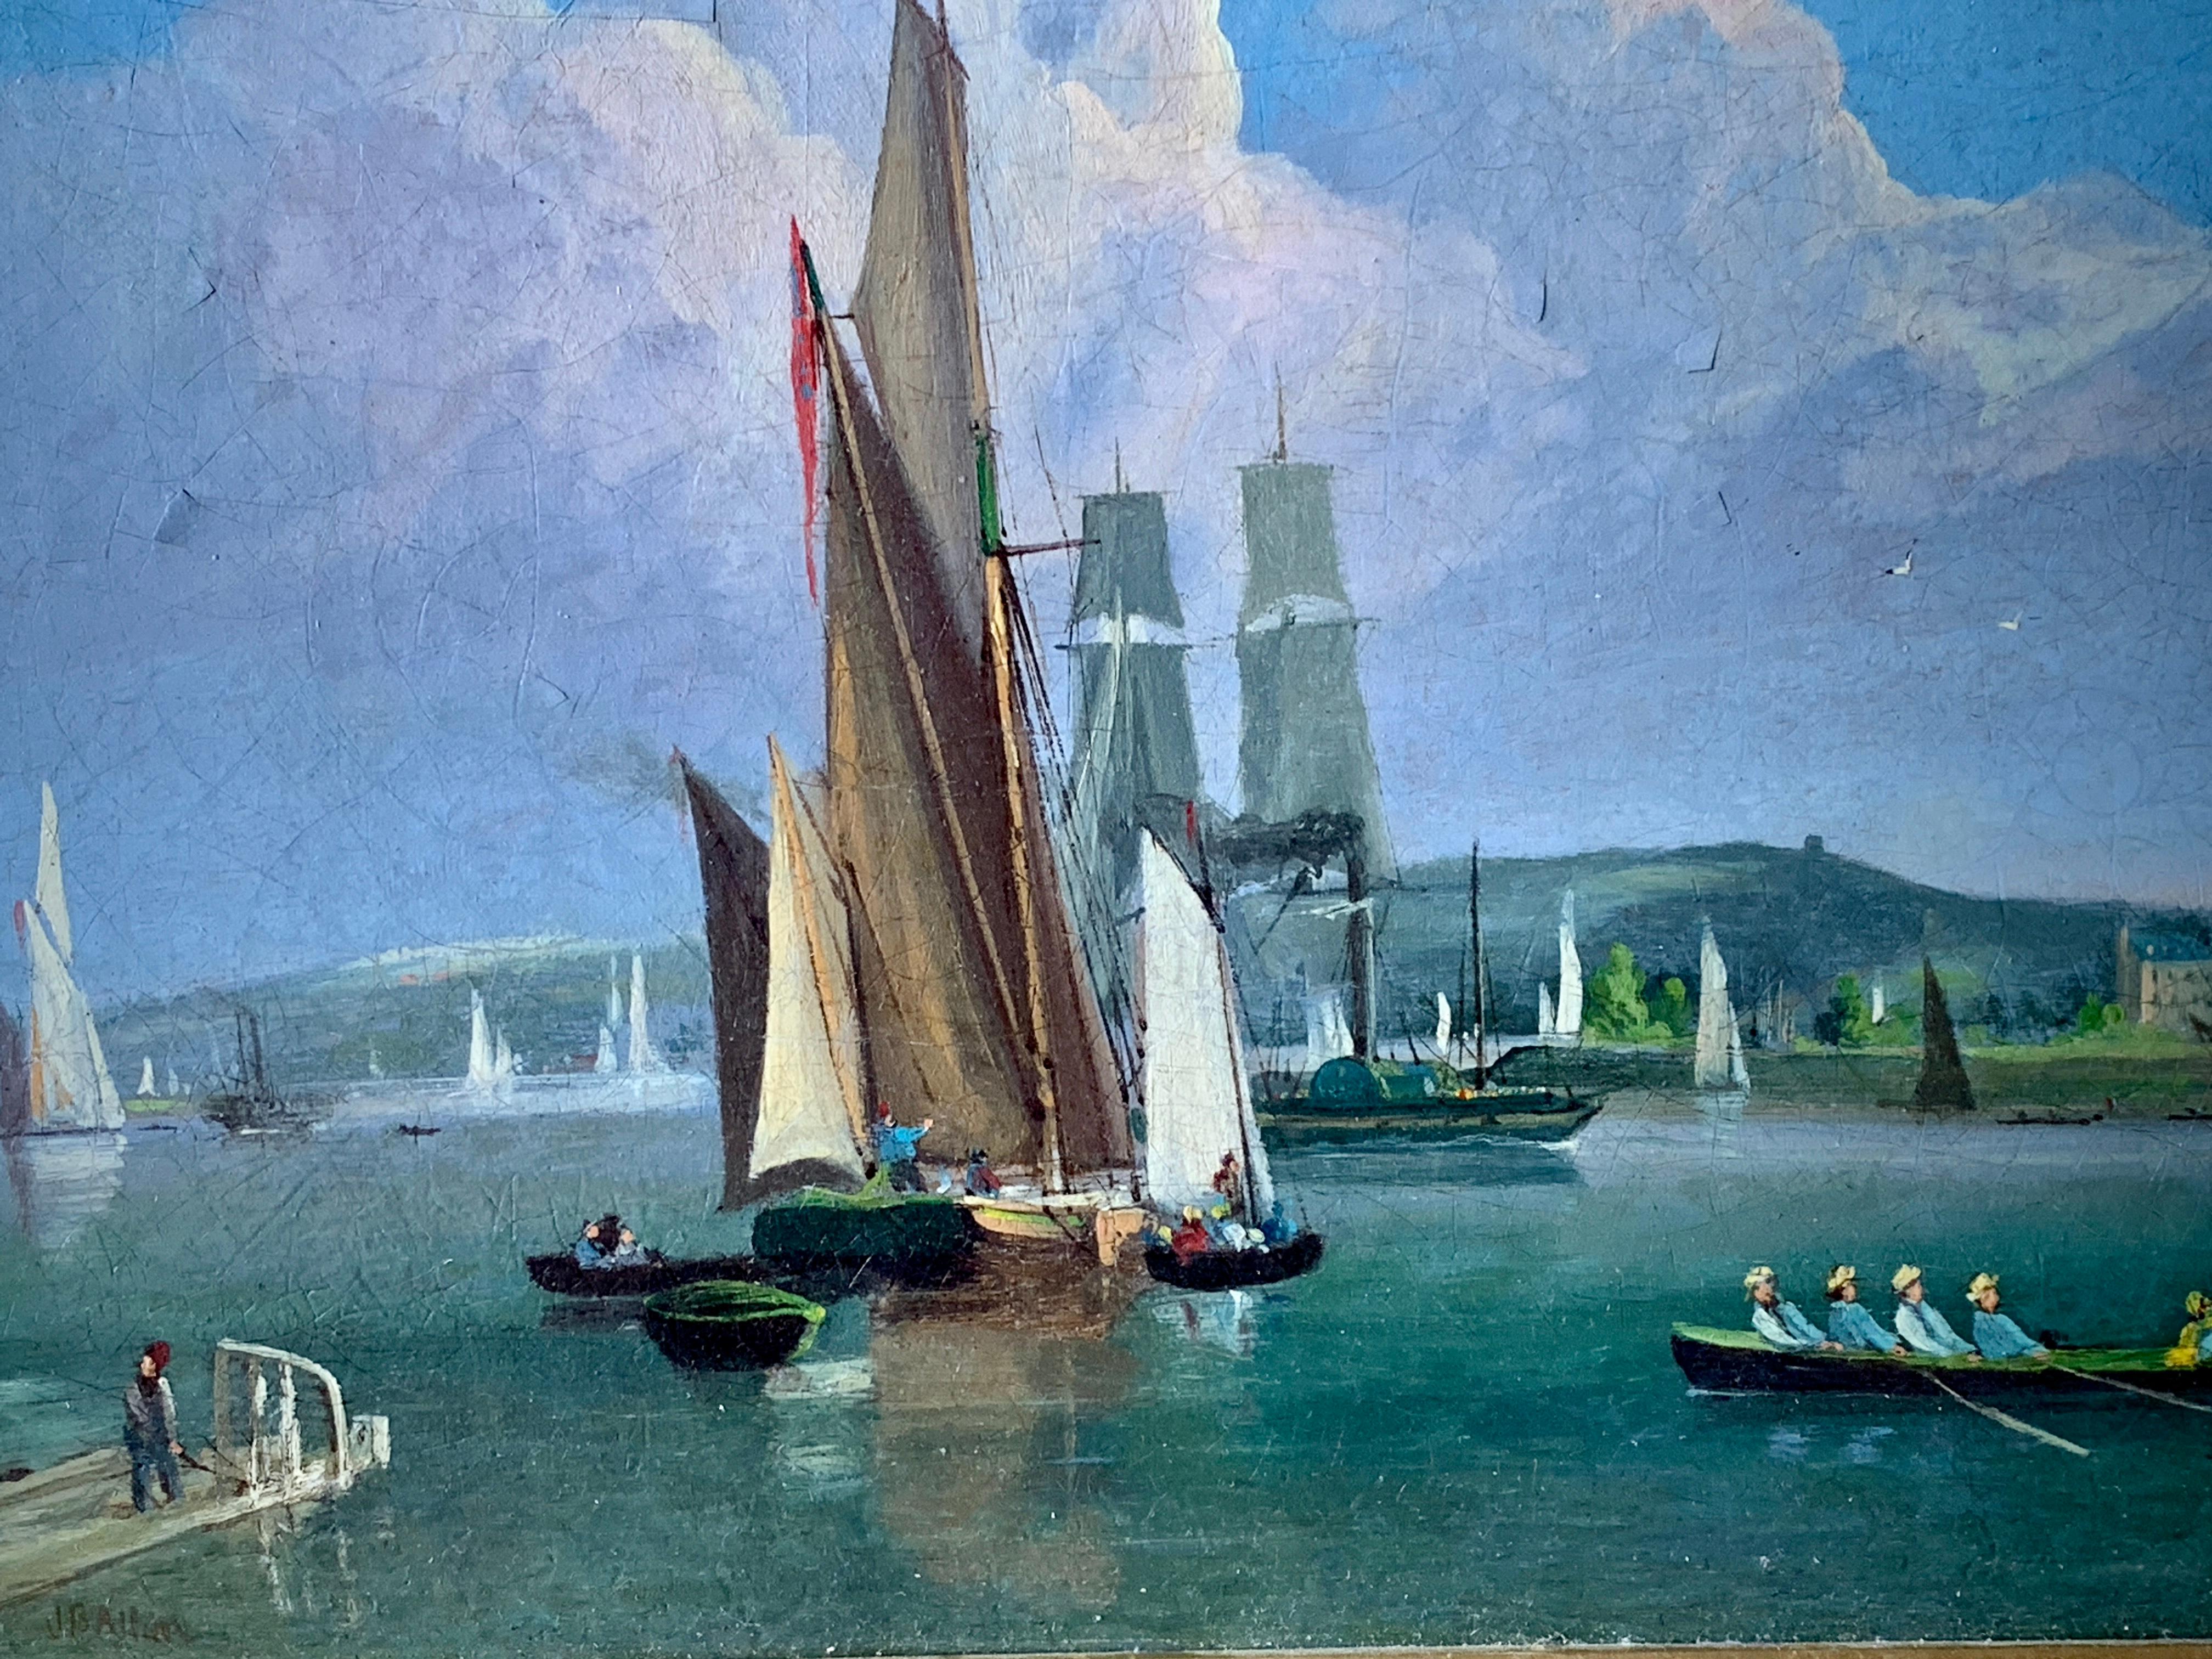 Des bateaux anglais du 19ème siècle sur une rivière avec des voiliers, des balanciers et un bateau à bascule - Victorien Painting par Unknown